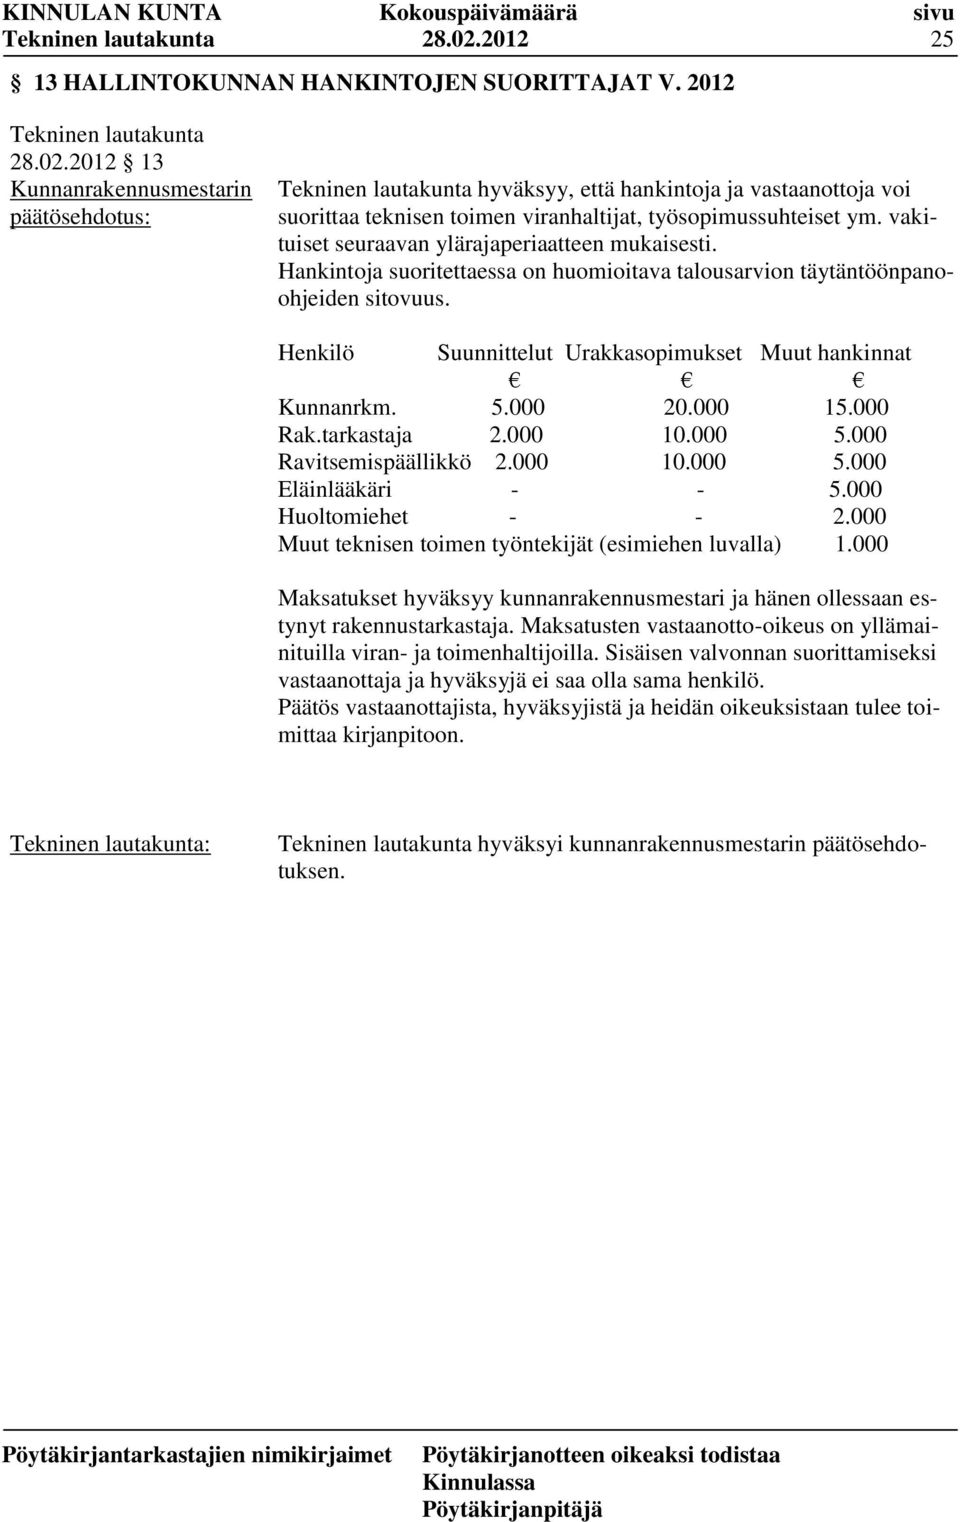 Henkilö Suunnittelut Urakkasopimukset Muut hankinnat Kunnanrkm. 5.000 20.000 15.000 Rak.tarkastaja 2.000 10.000 5.000 Ravitsemispäällikkö 2.000 10.000 5.000 Eläinlääkäri - - 5.000 Huoltomiehet - - 2.